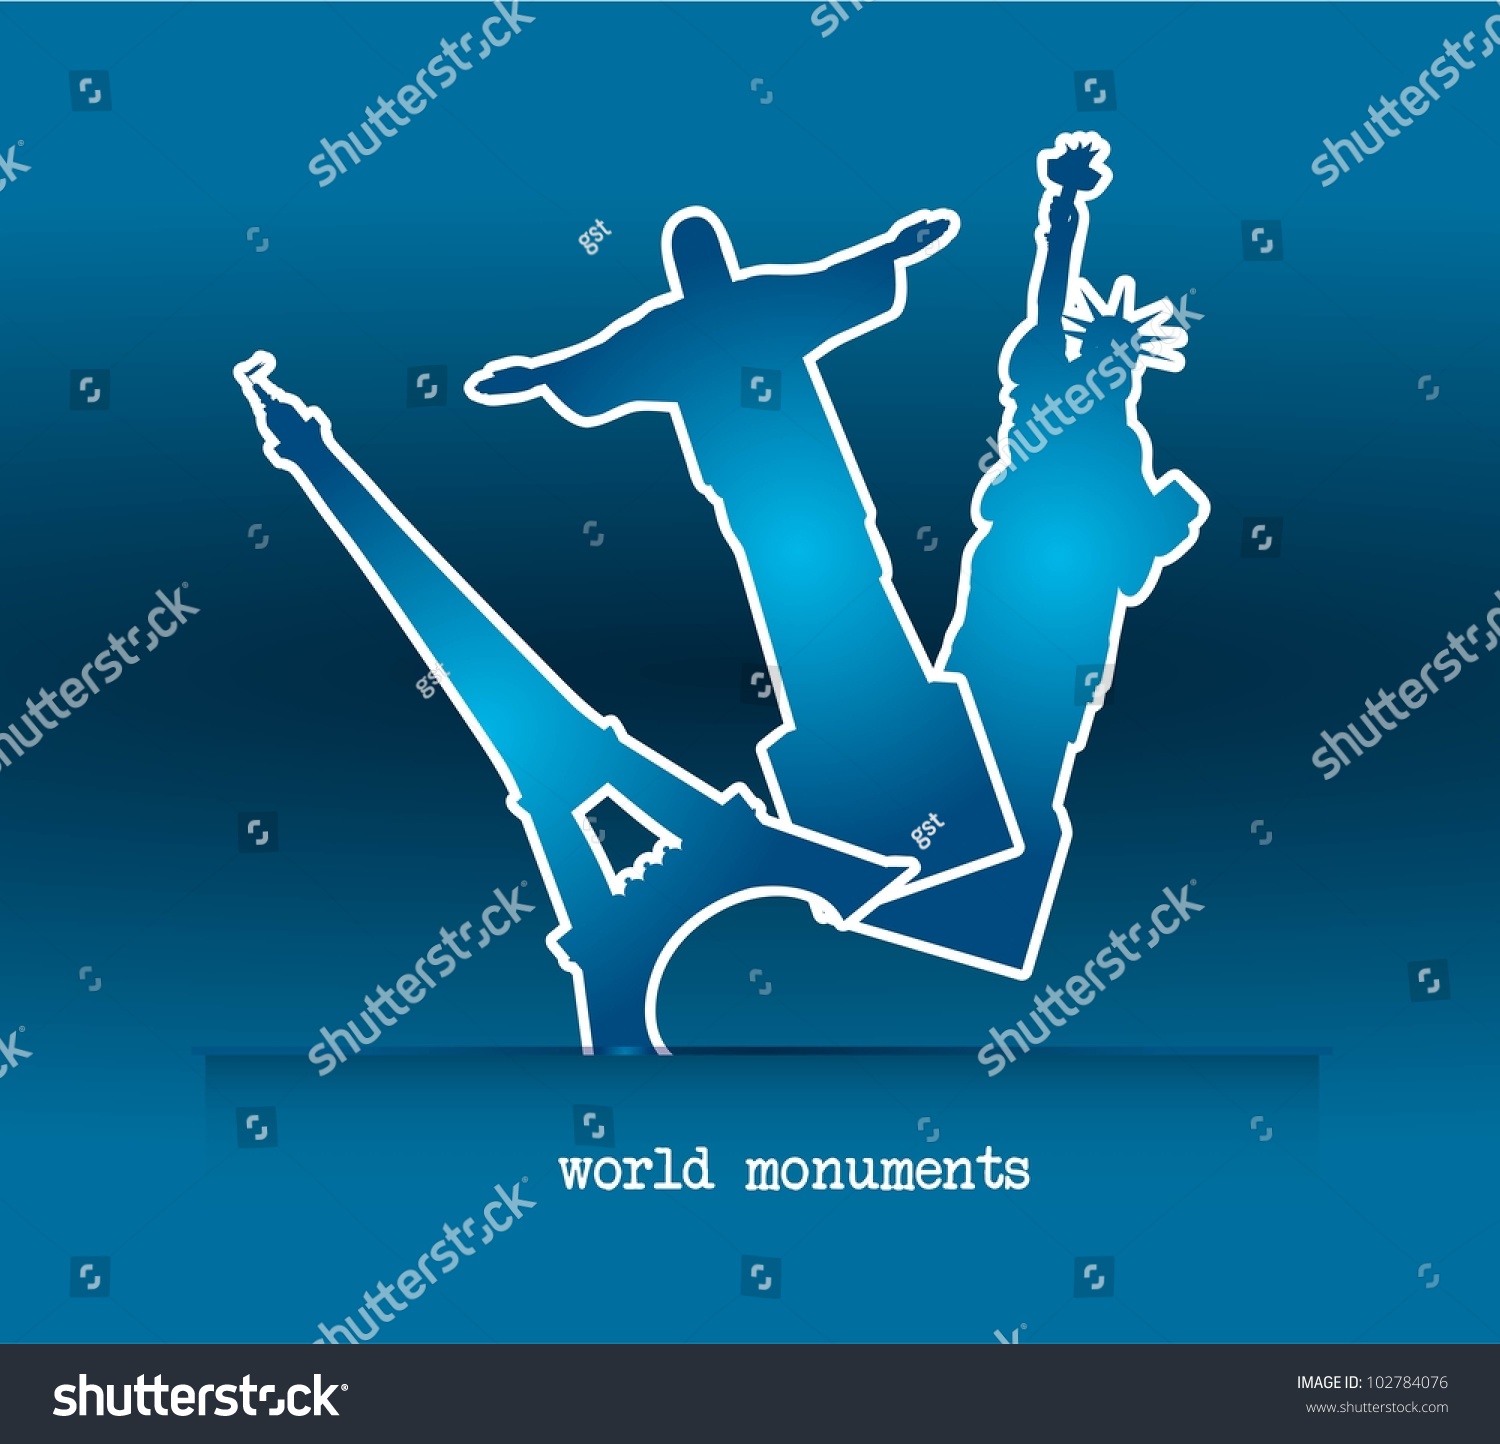 SVG of blue world monuments over blue background. vector illustration svg